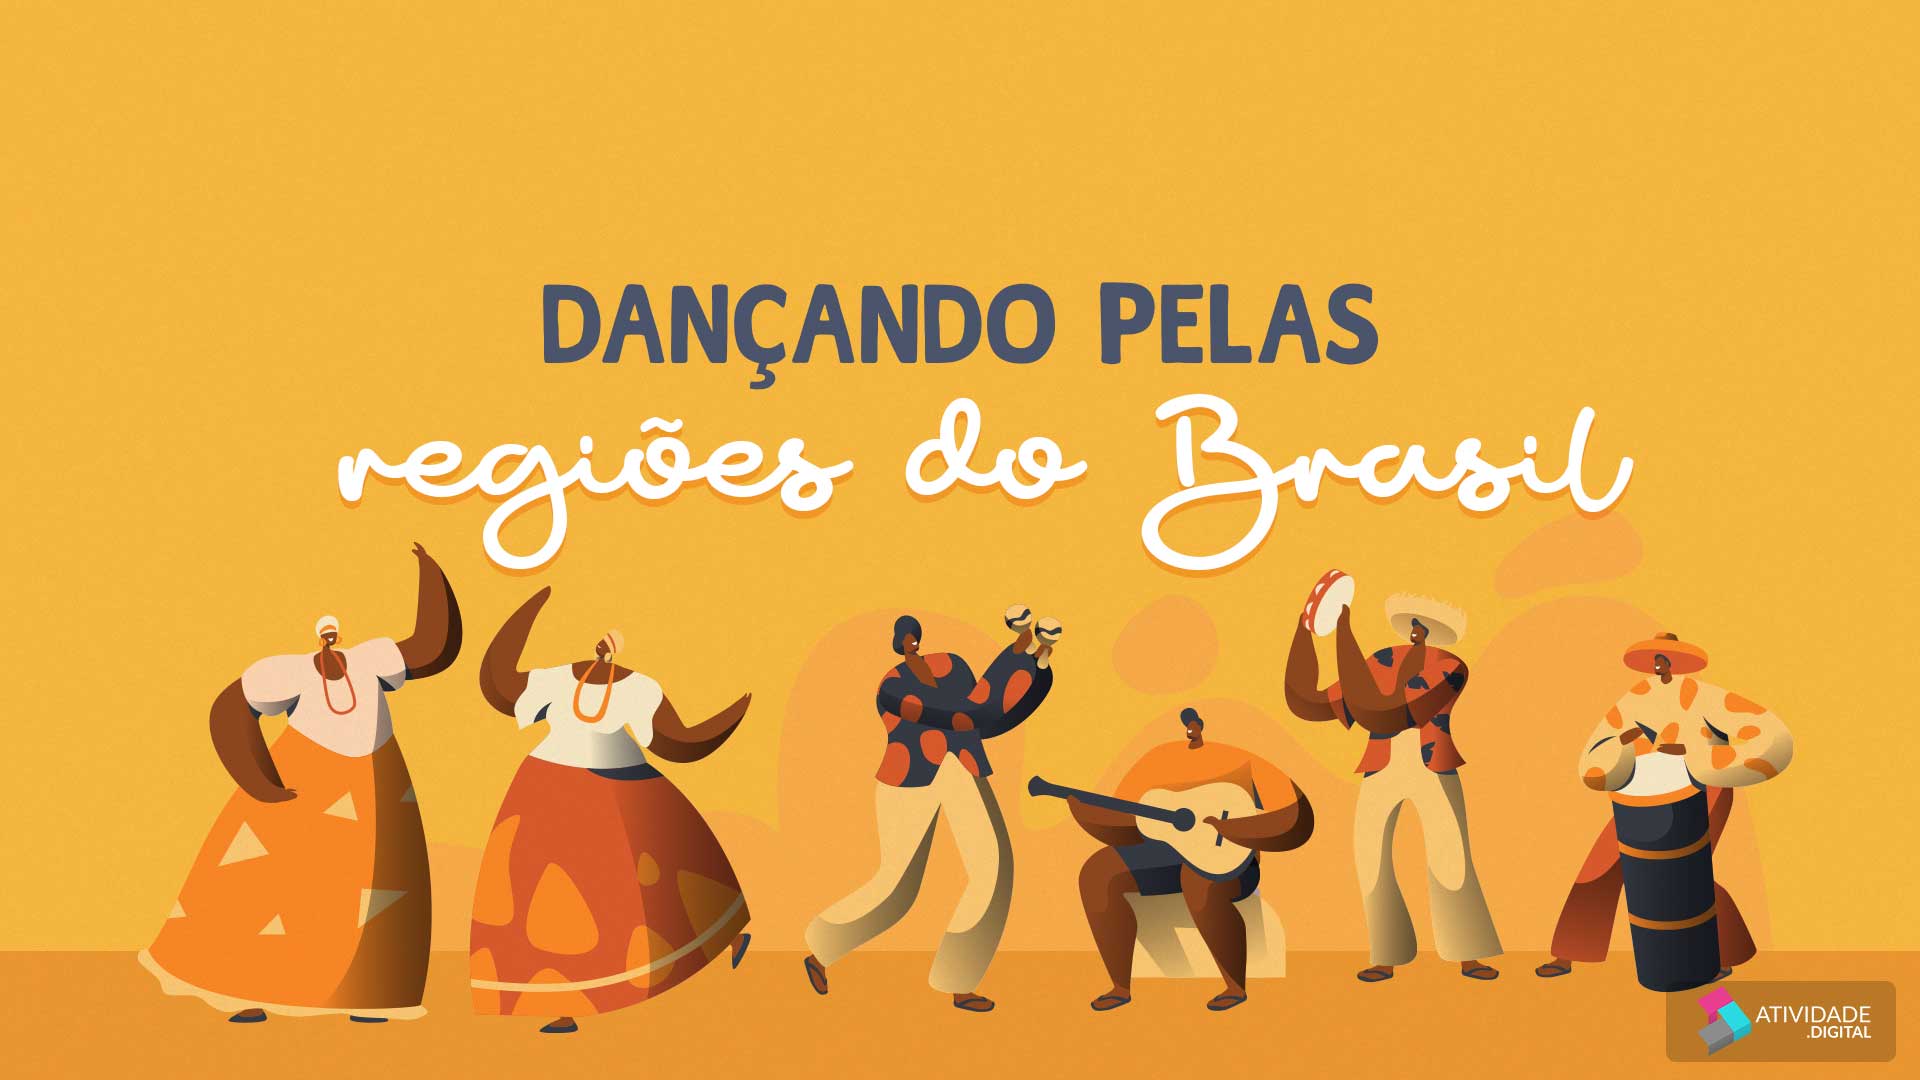 Dançando pelas regiões do Brasil